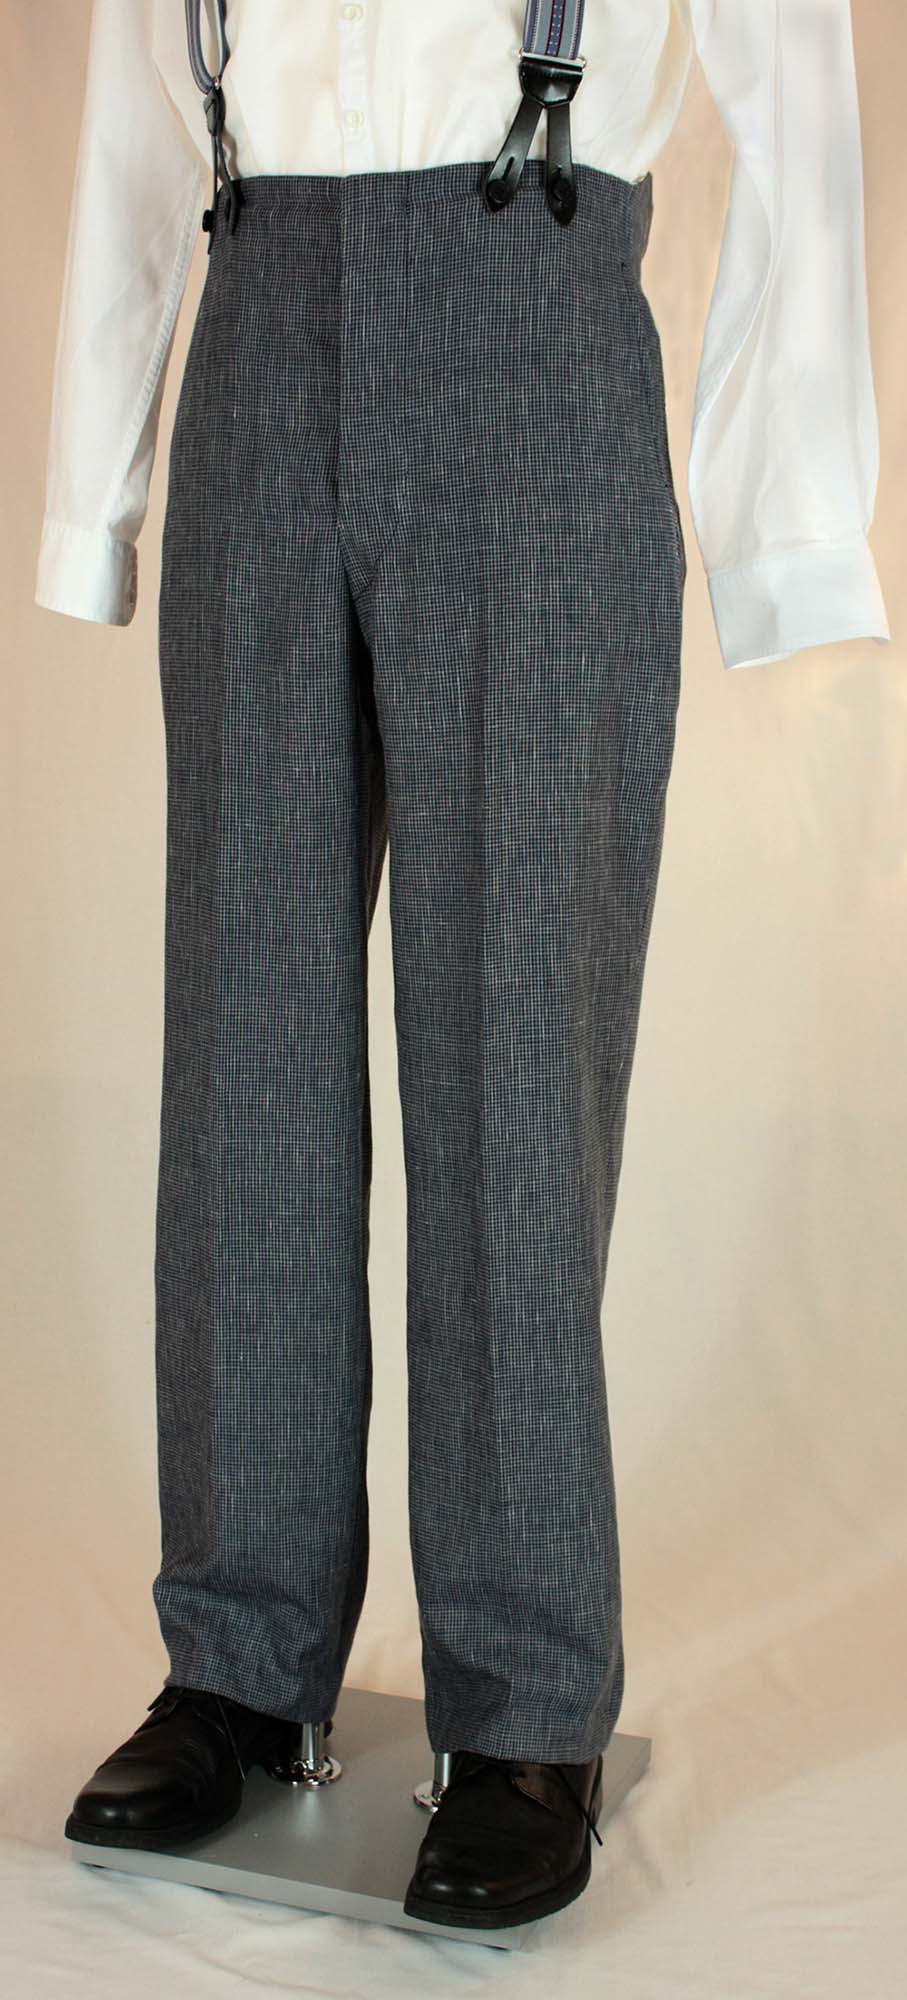 1940s Vintage Granville Herringbone Wool Bag Trousers in Brown   RevivalVintage